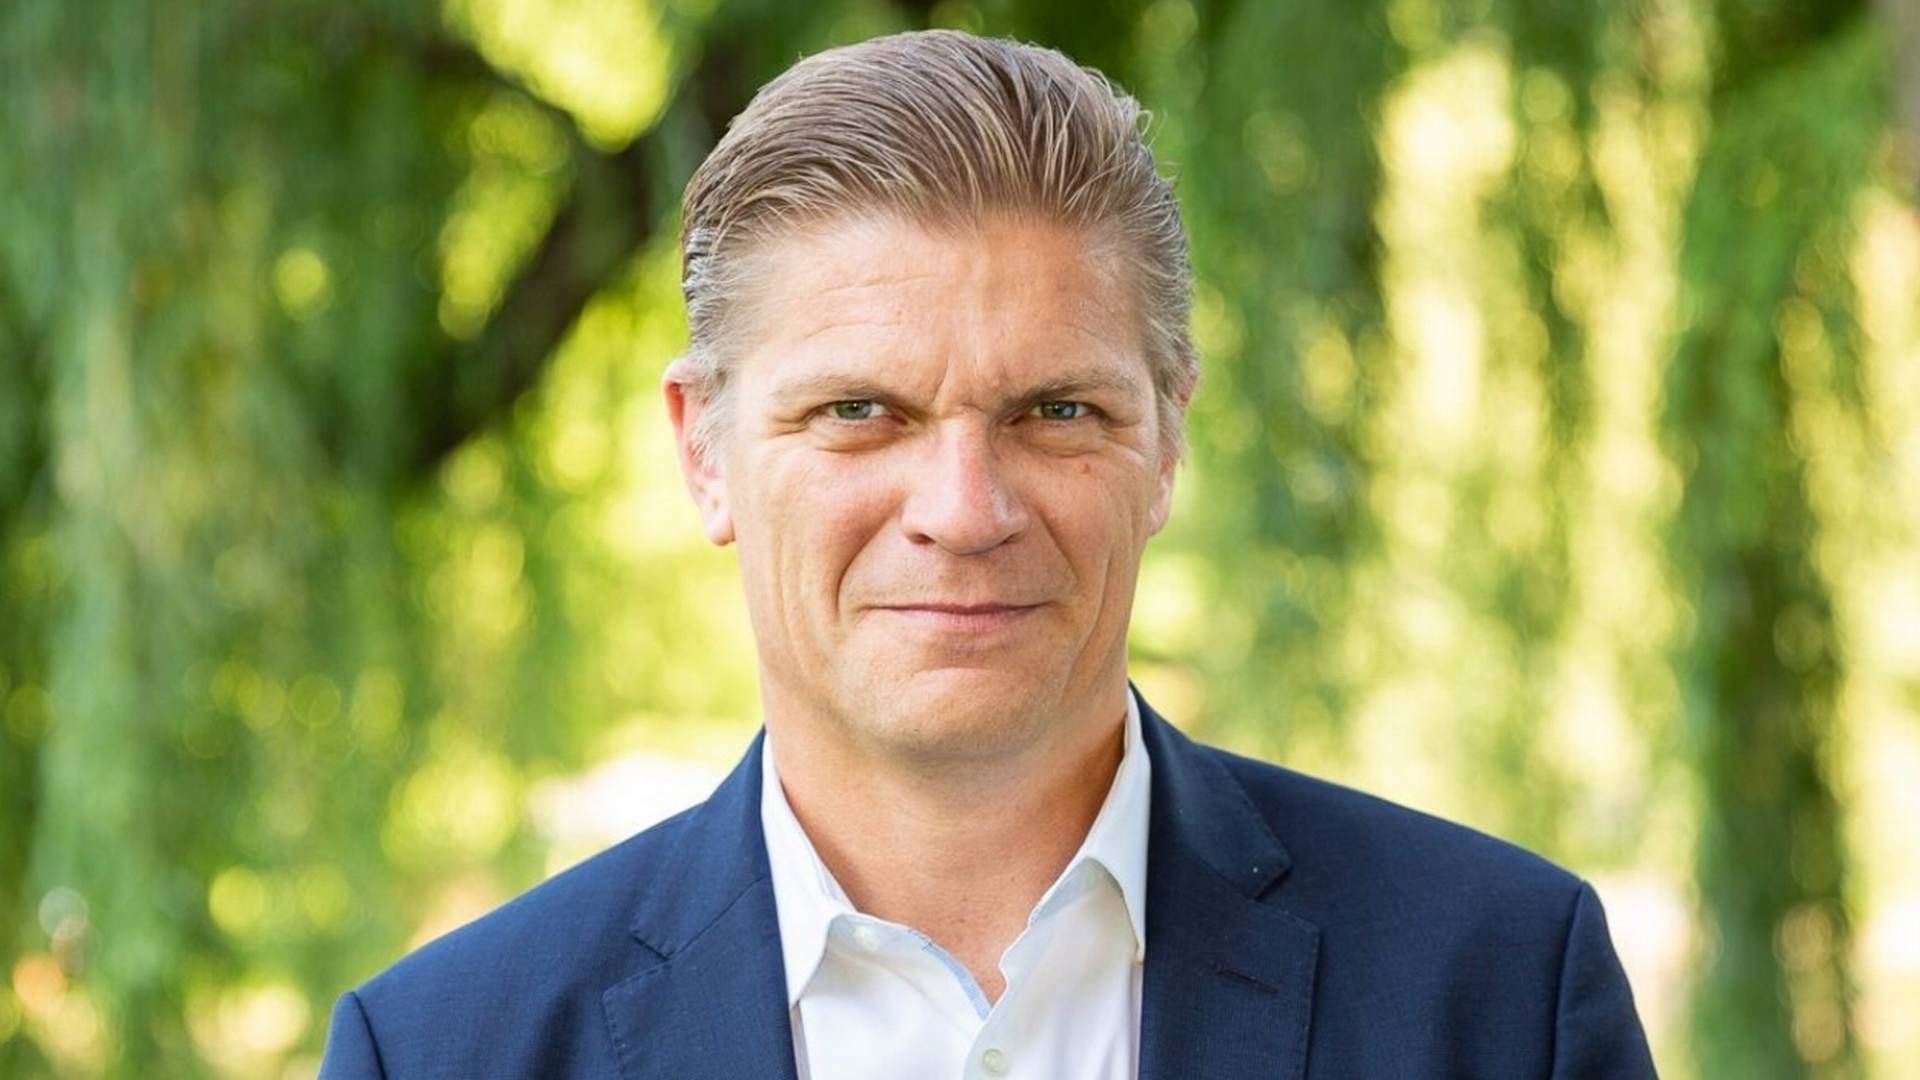 Chefen for europæiske markeder hos Nasdaq, Bjørn Sibbern, stopper ved årsskiftet. | Foto: Nasdaq/PR